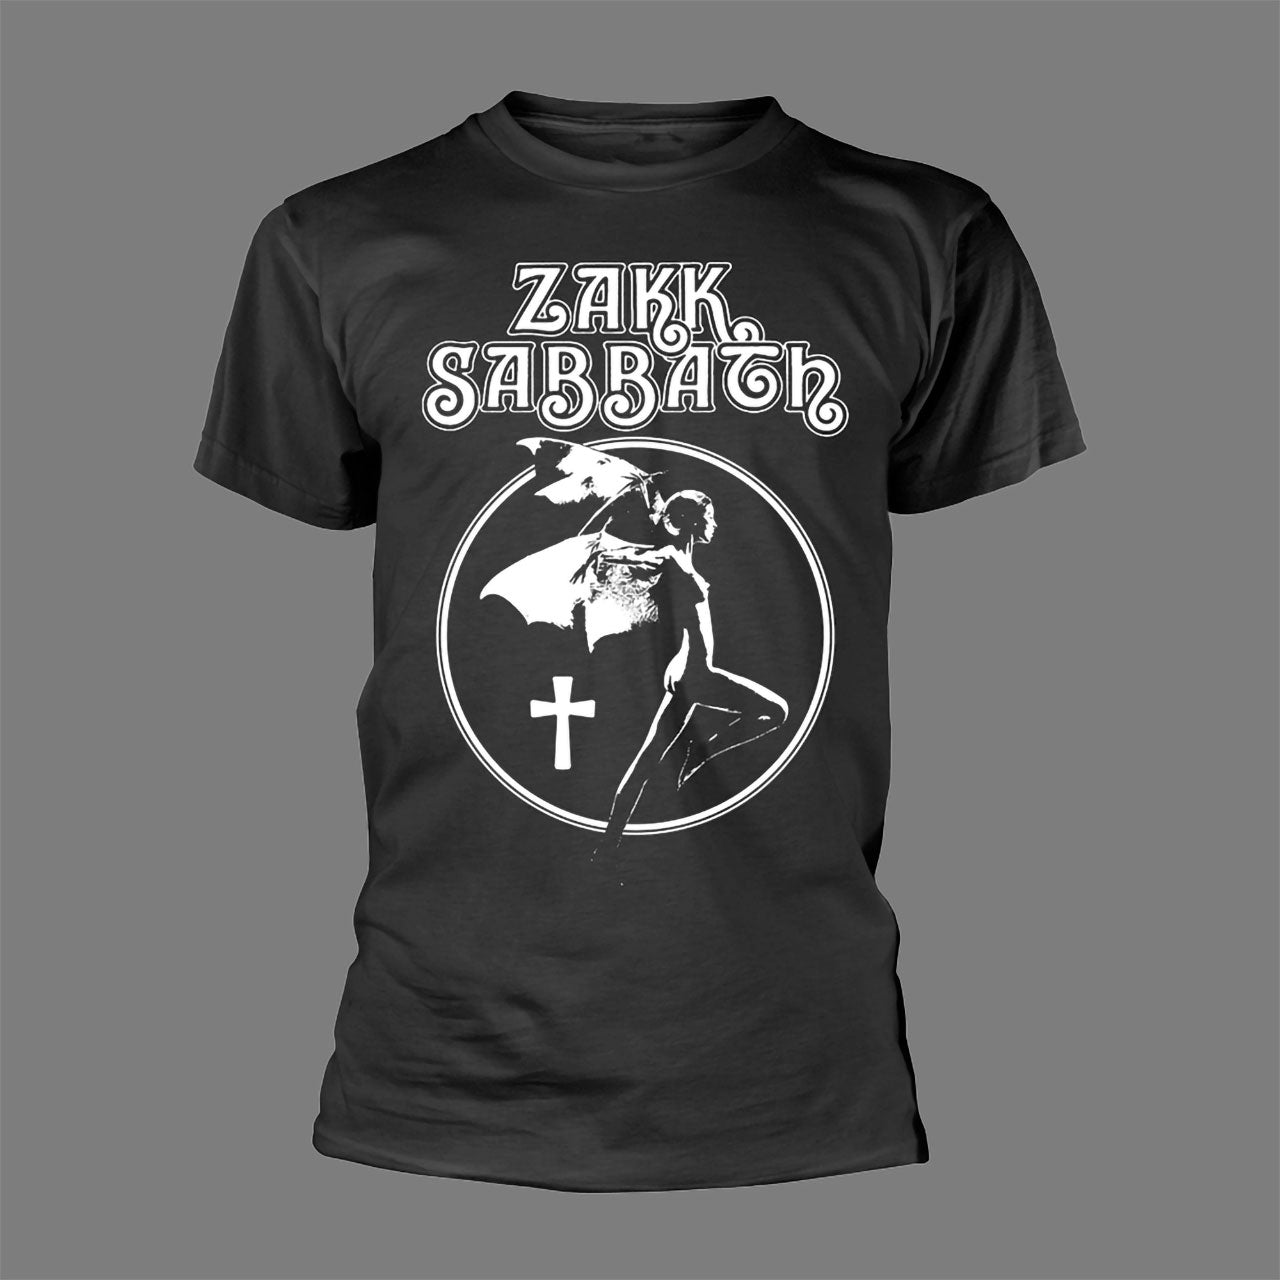 Zakk Sabbath - Icon (T-Shirt)